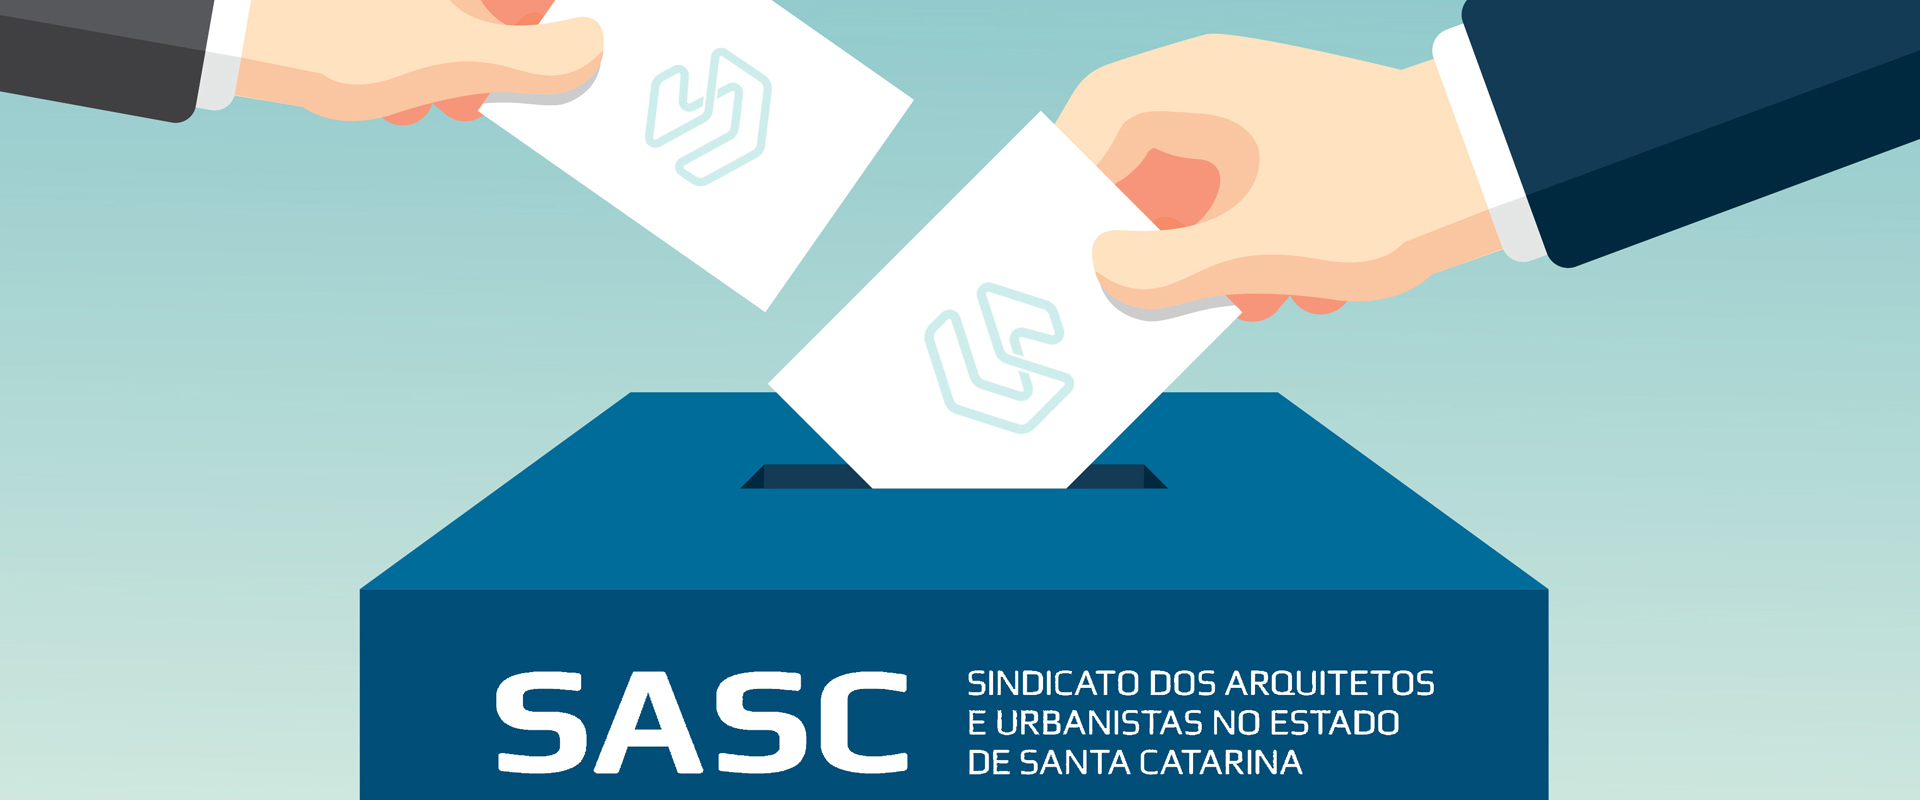 Chapa Horizontes concorre para eleição do SASC nesta segunda-feira